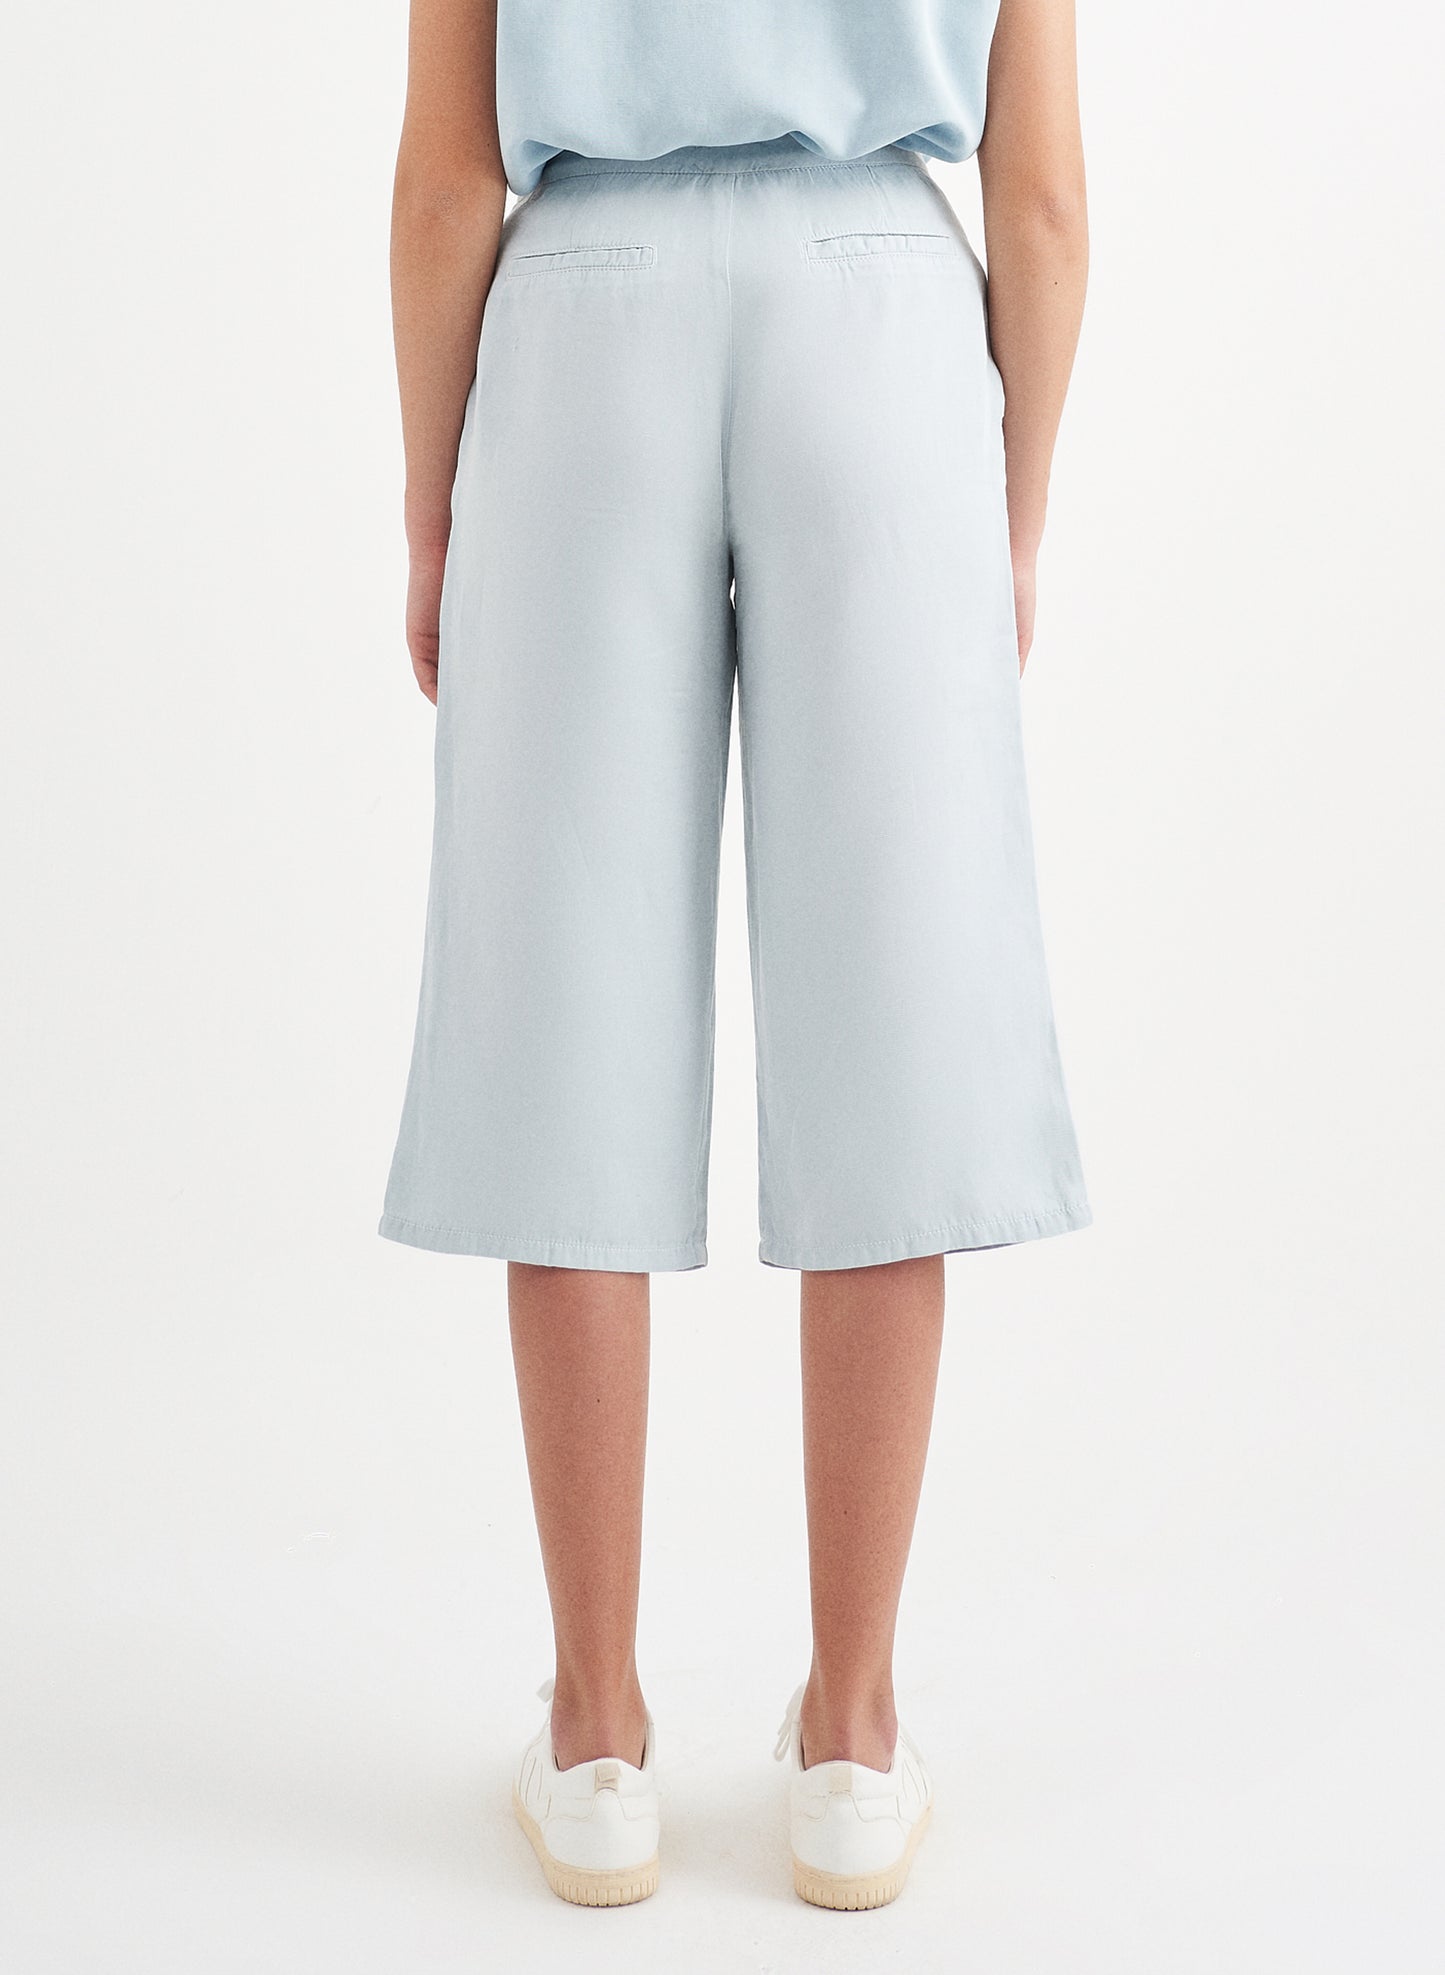 TERA - Crop Fit Tencel™ Linen Pant - Blue Dream